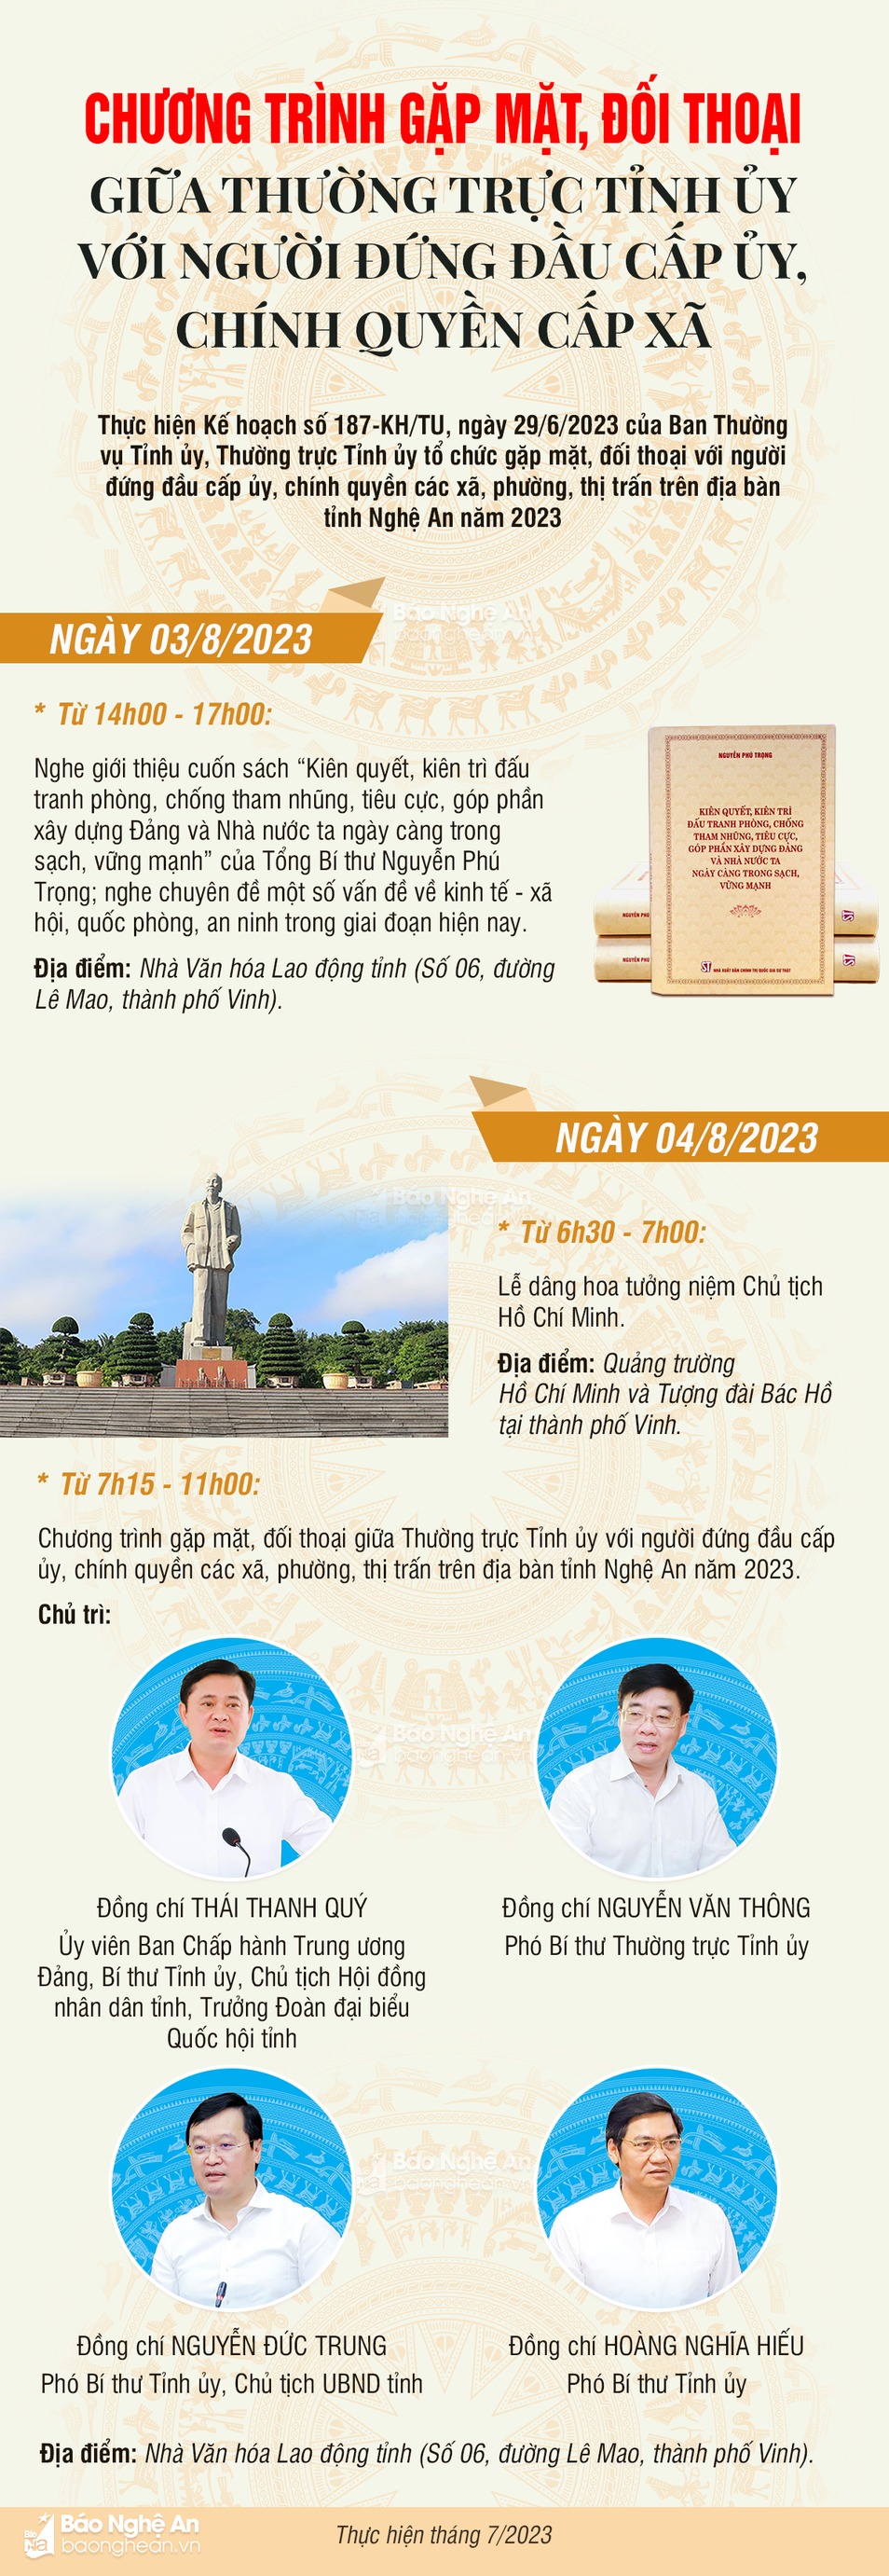 info-thuong-truc-tinh-uy-voi-nguoi-dung-dau-cap-uy-chinh-quyen-cap-xa-chuyen-quan-8262.jpg